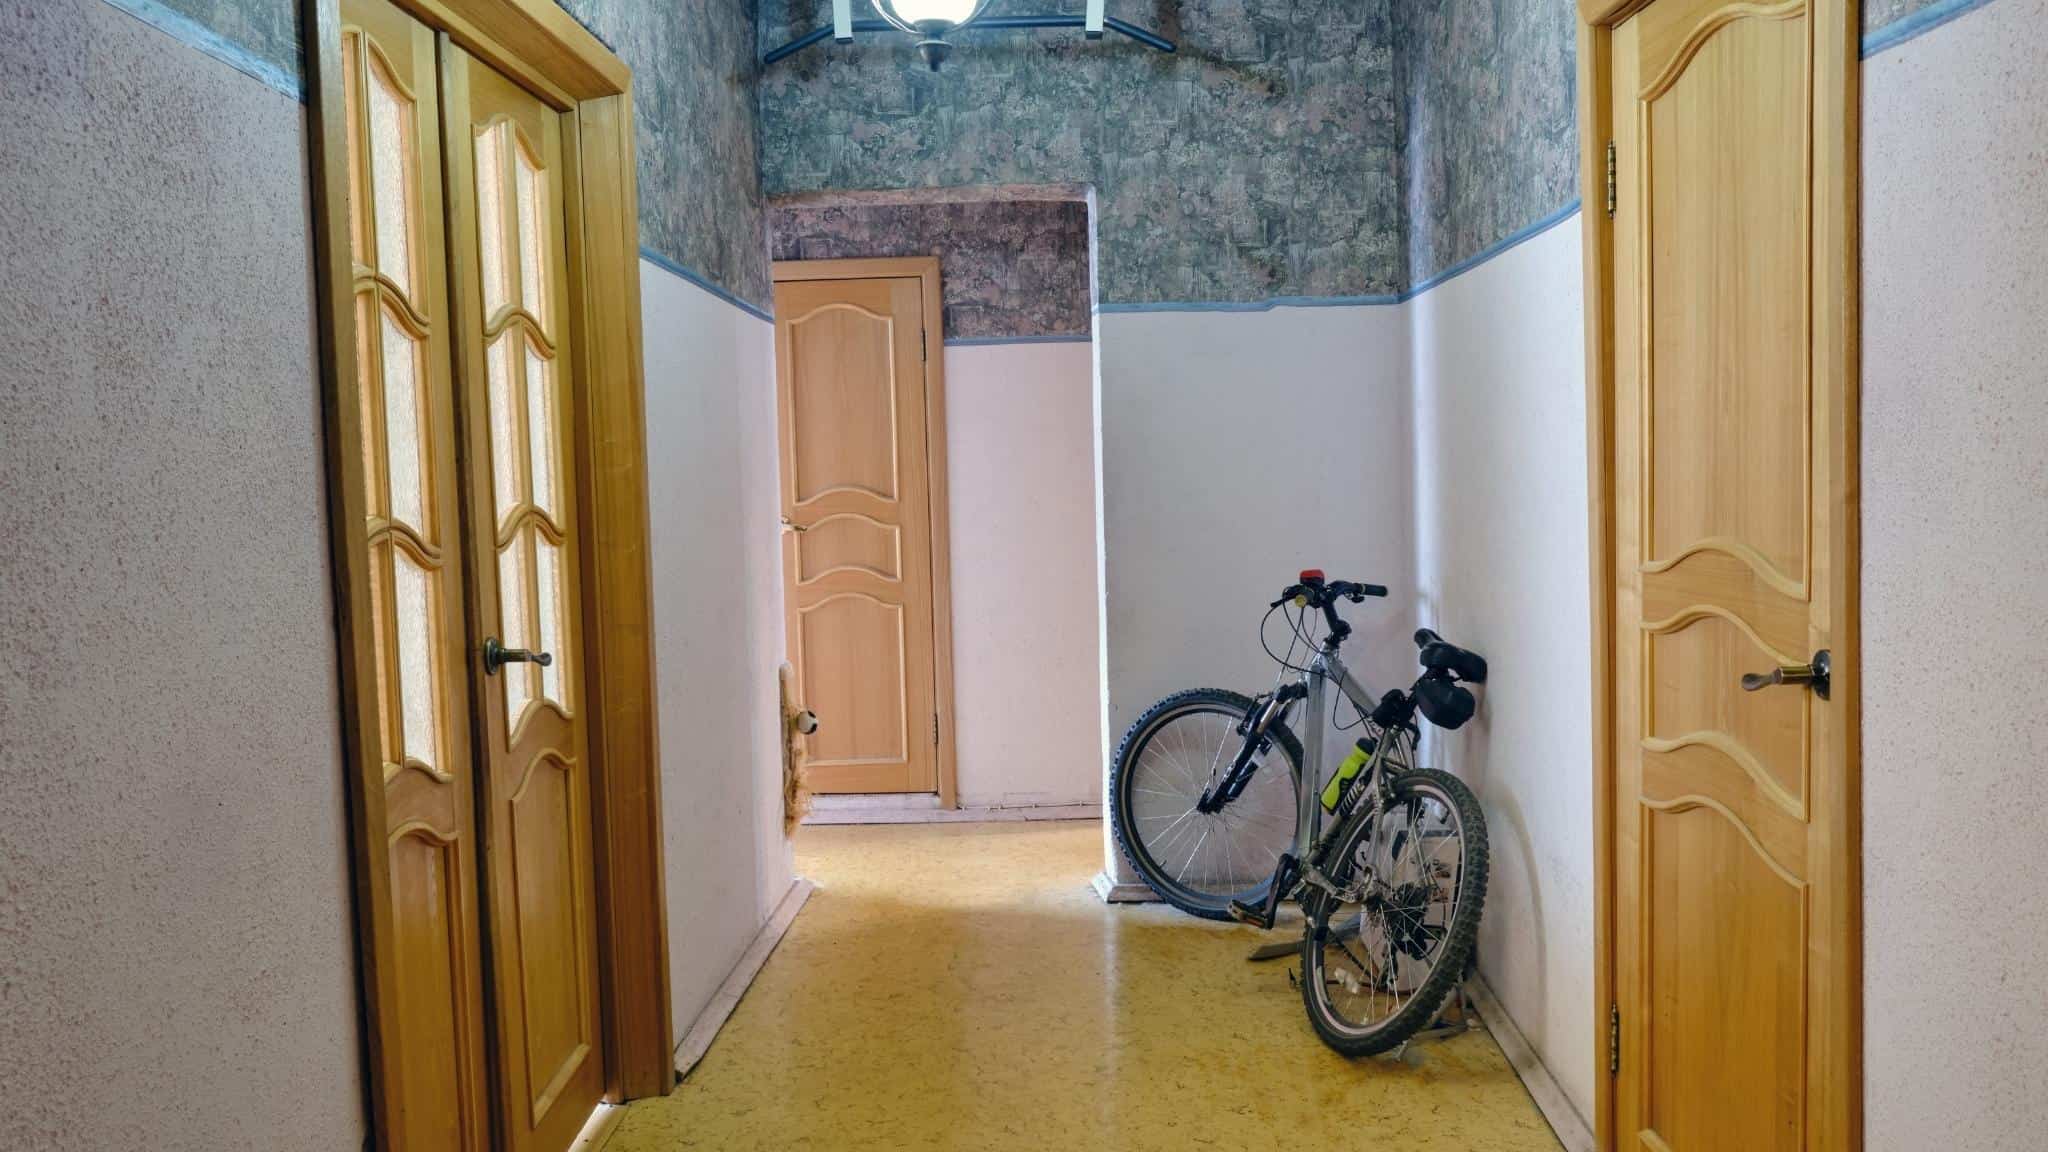 Bike stored in the hallway